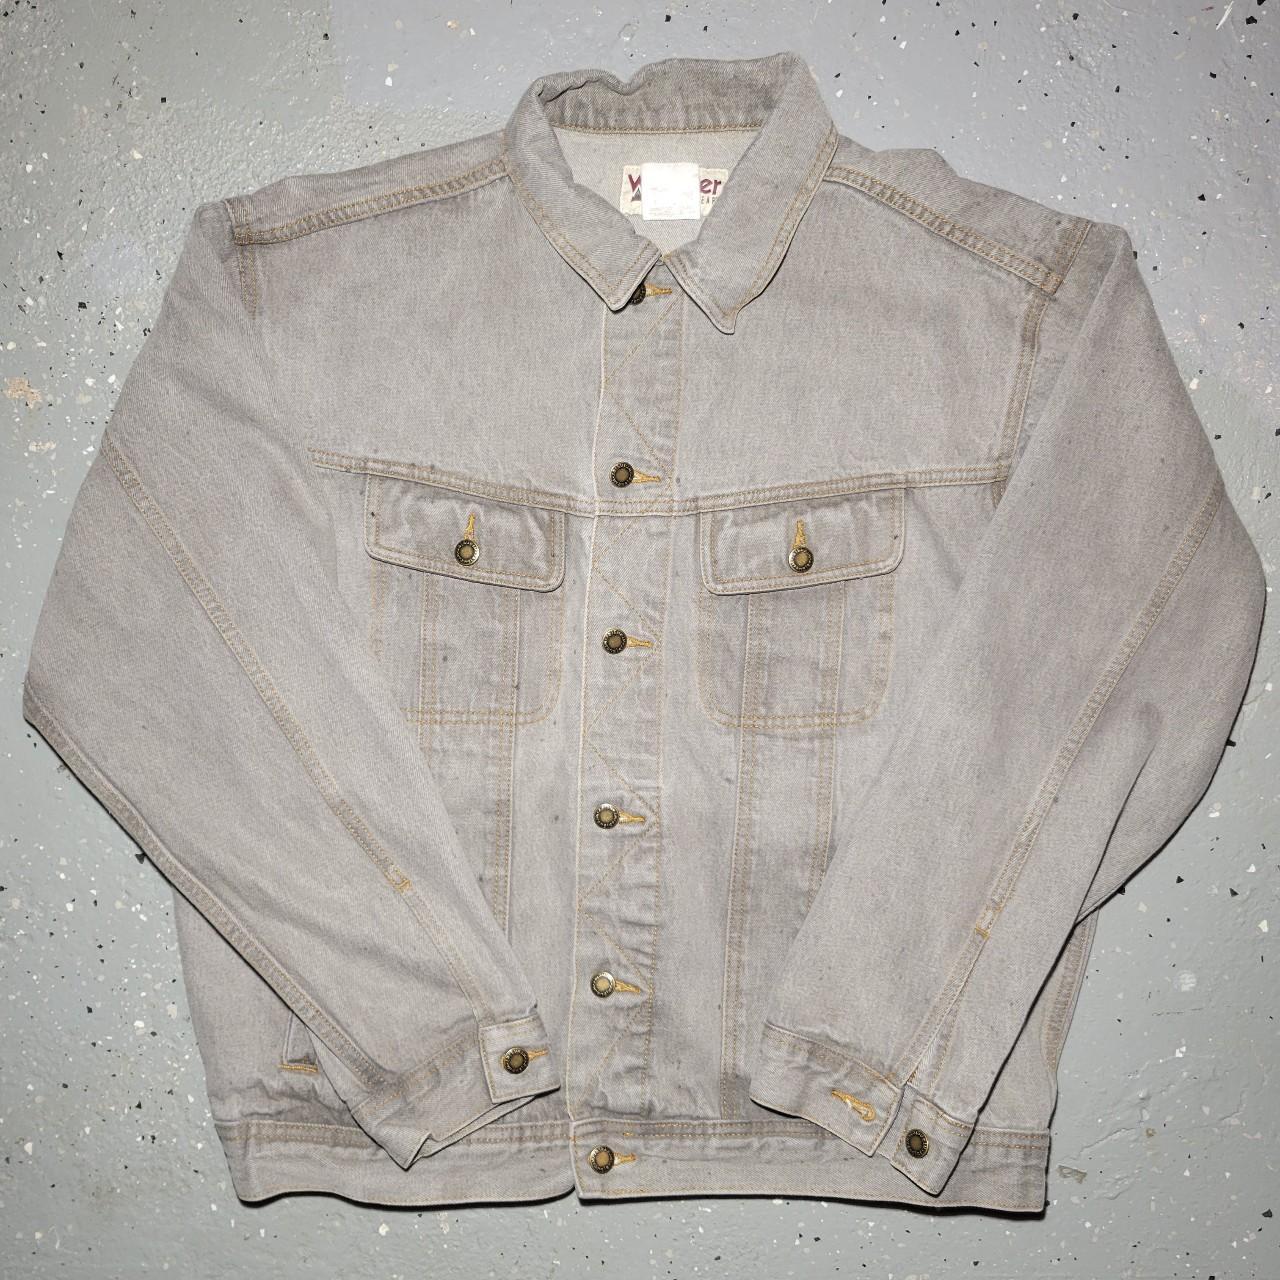 Vintage Wrangler “Rugged Wear” Denim Jacket for Men, … - Gem